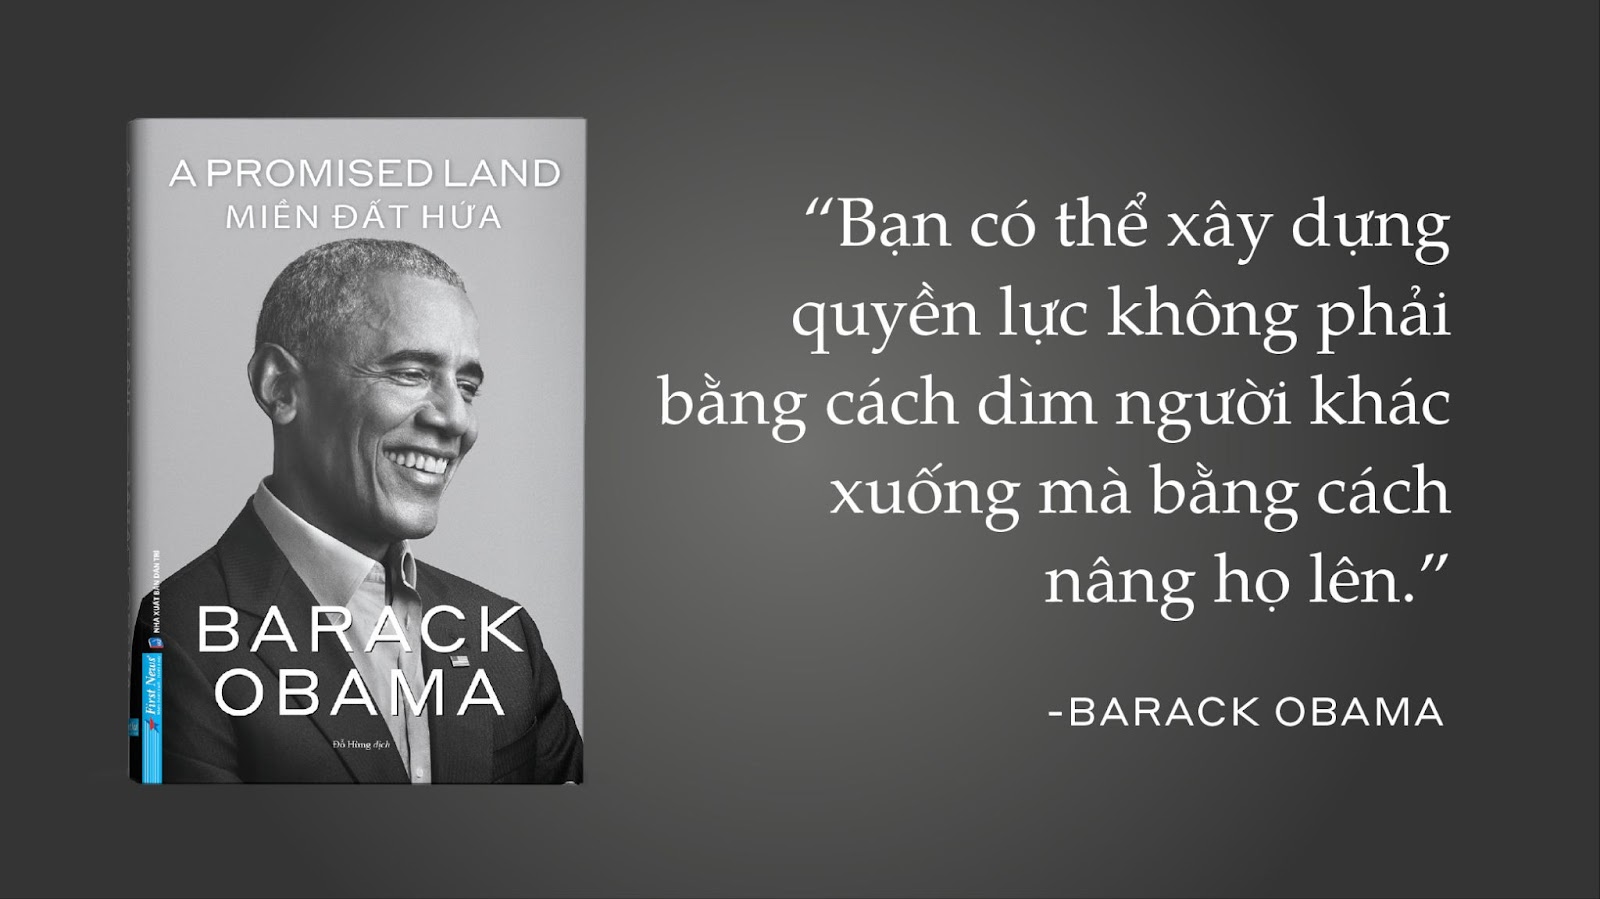 Hồi ký nổi tiếng của cựu Tổng thống Obama xuất bản tại Việt Nam - 3